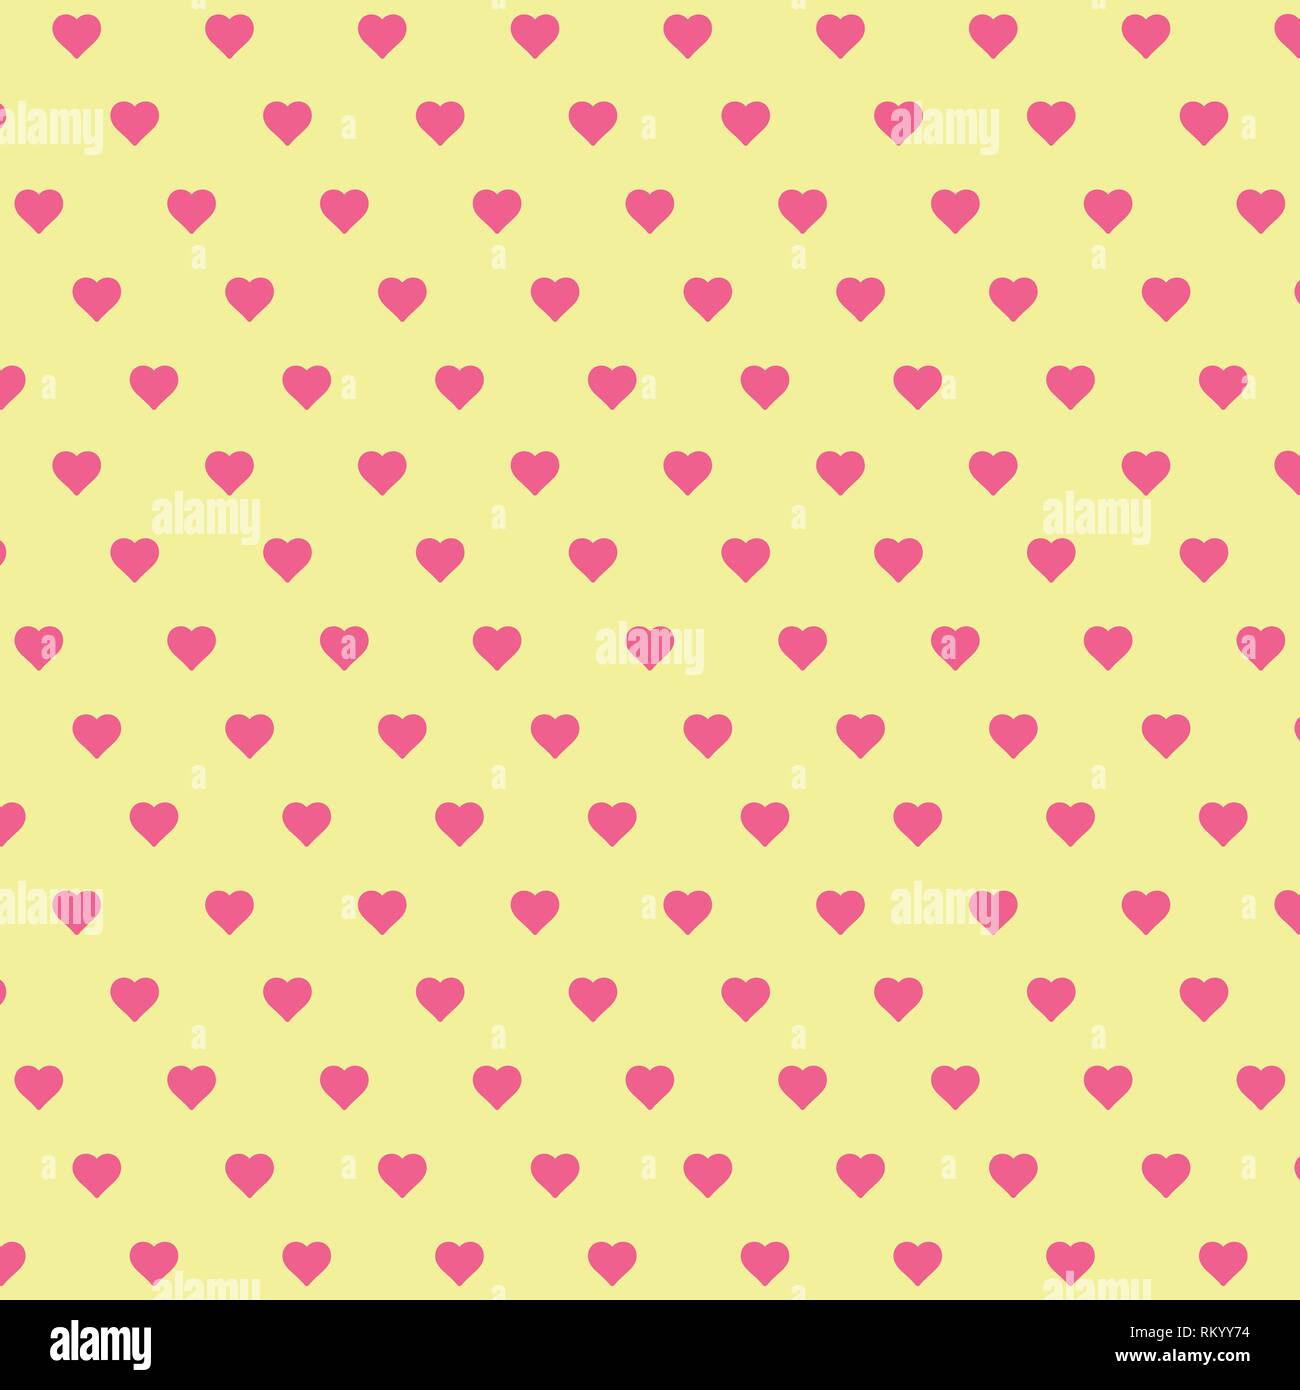 Fond du cœur modèle vectoriel - St Valentin, ou la fête des Mères fond d'répétant cœurs populaires love heart banner idée décoration sur jaune Illustration de Vecteur